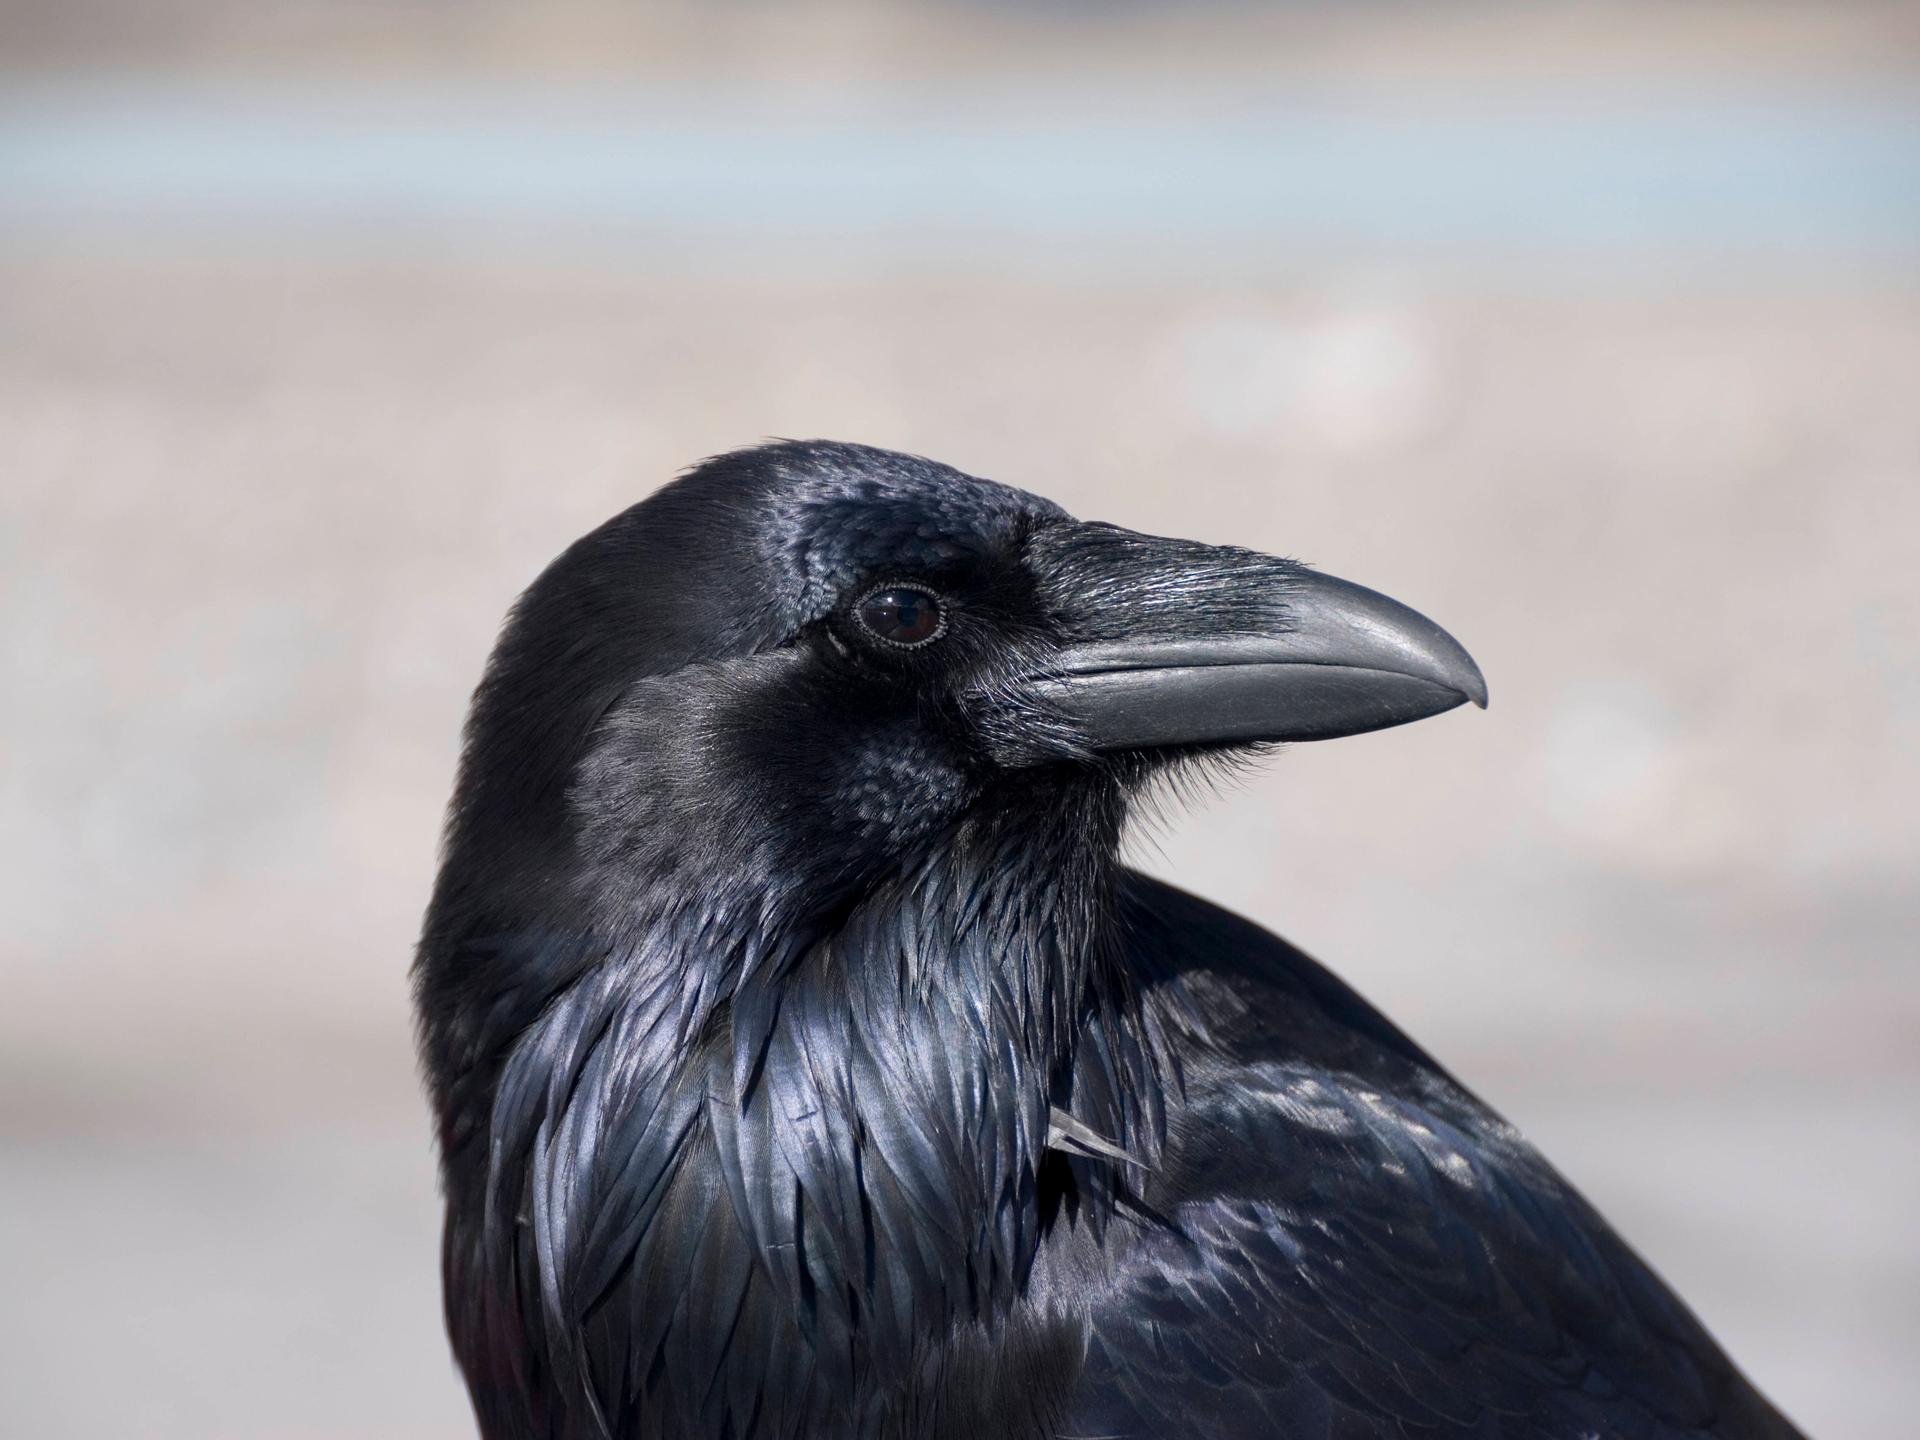 Wir sehen den Kopf eines schwarzen Vogels im Profil - es ist ein Rabe. 